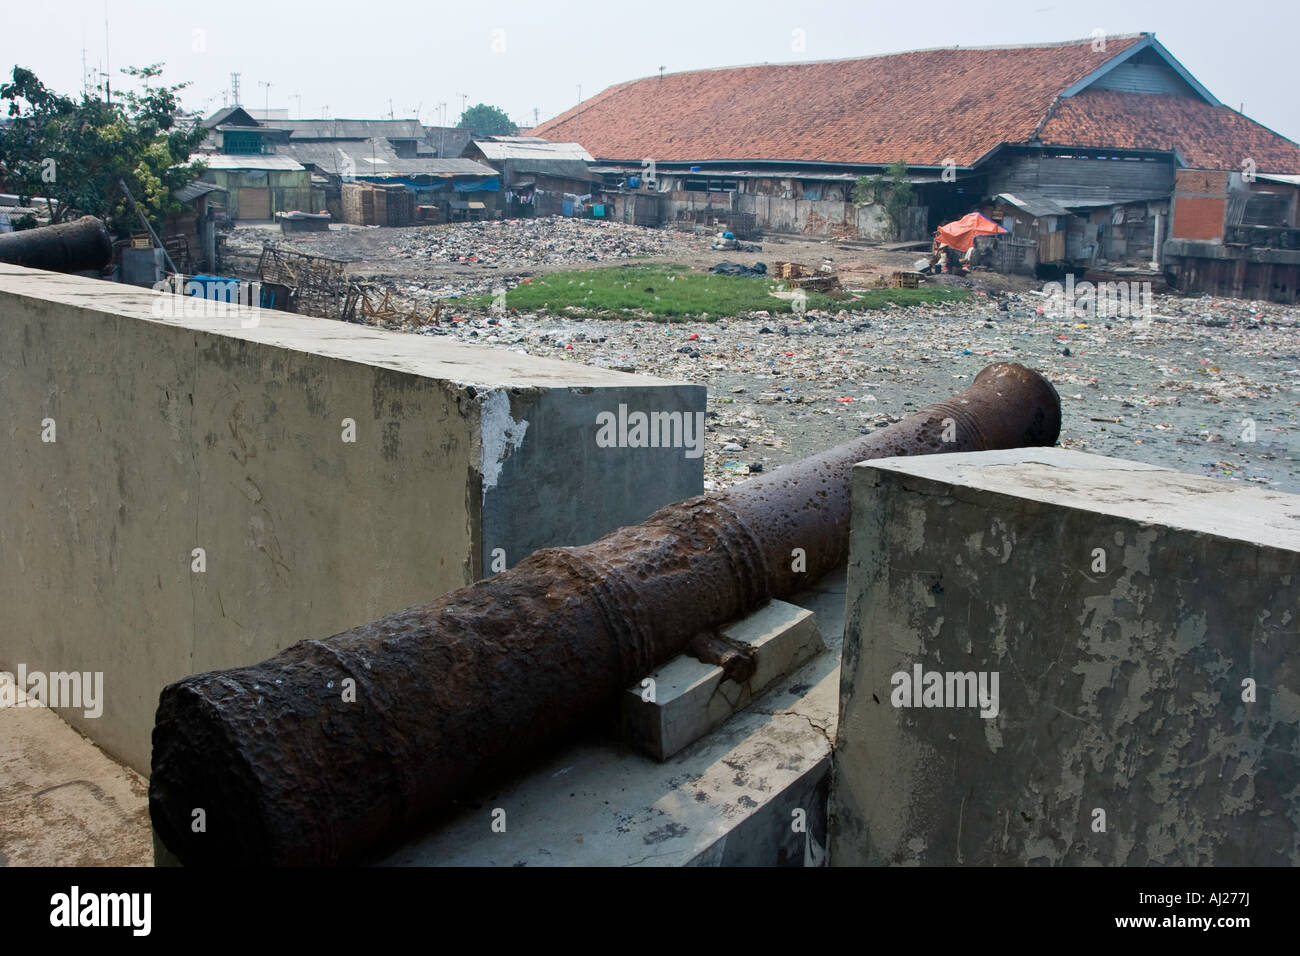 Old Dutch de canons à regarder ou Syahbandar Menara Lookout Tower donnent sur une rivière polluée d'ordures de Jakarta, Indonésie Banque D'Images